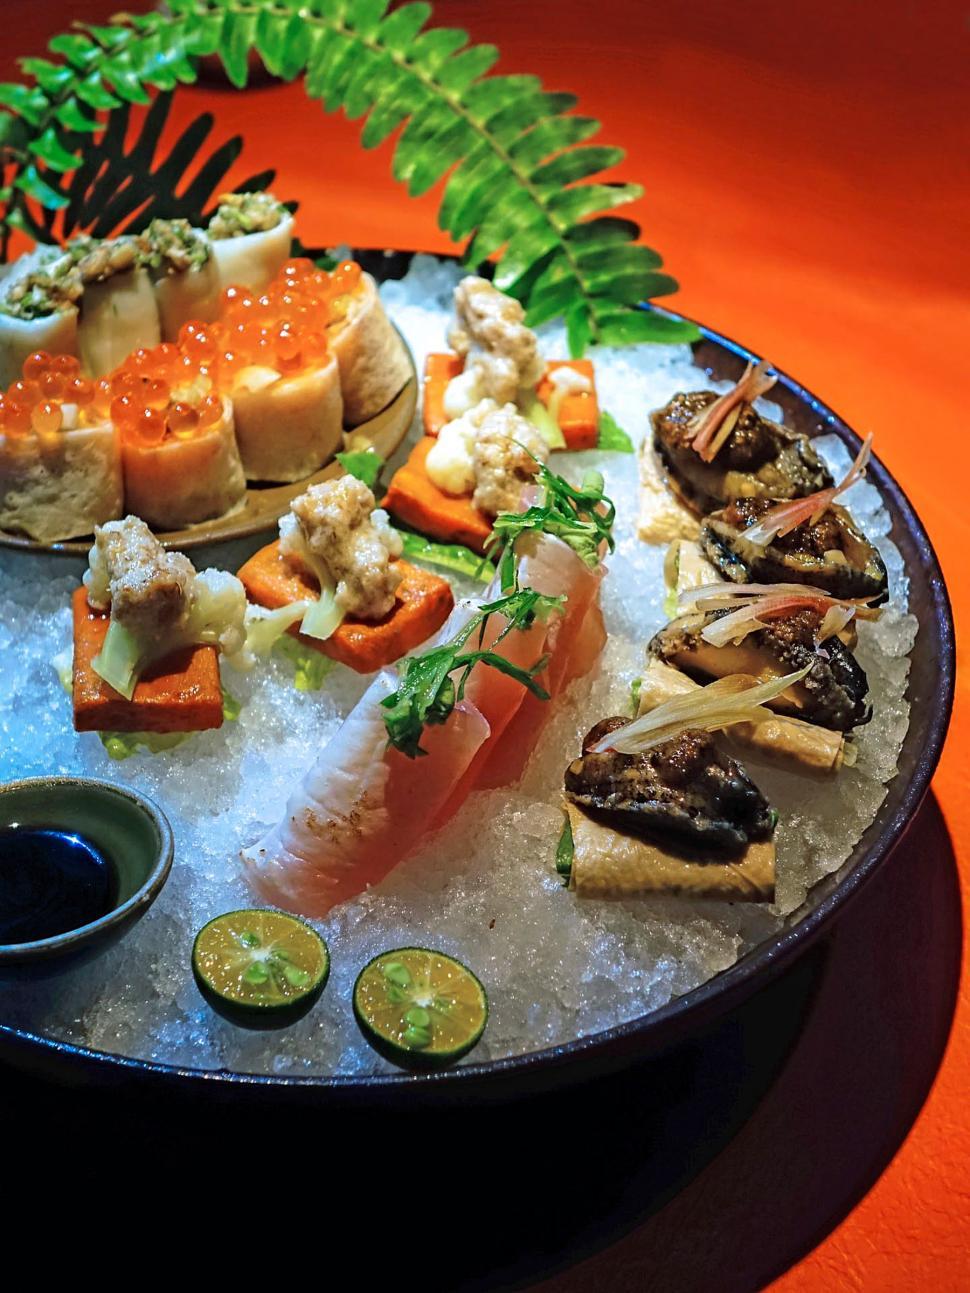 Free Image of Sushi Dish 